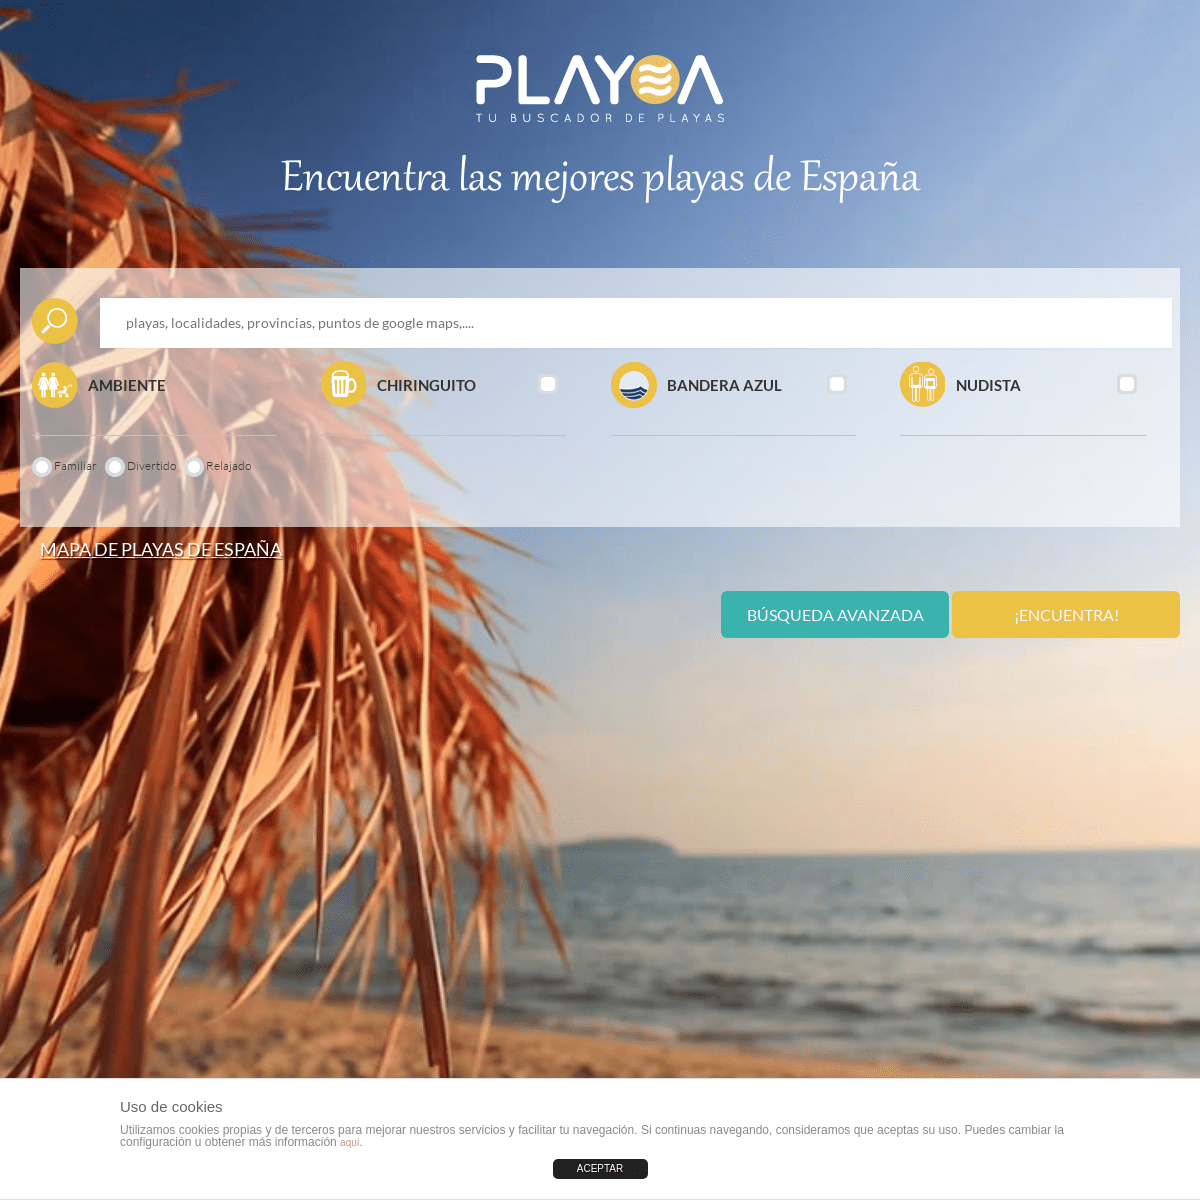  Encuentra las mejores playas de España | Playea.es tu buscador de playas 